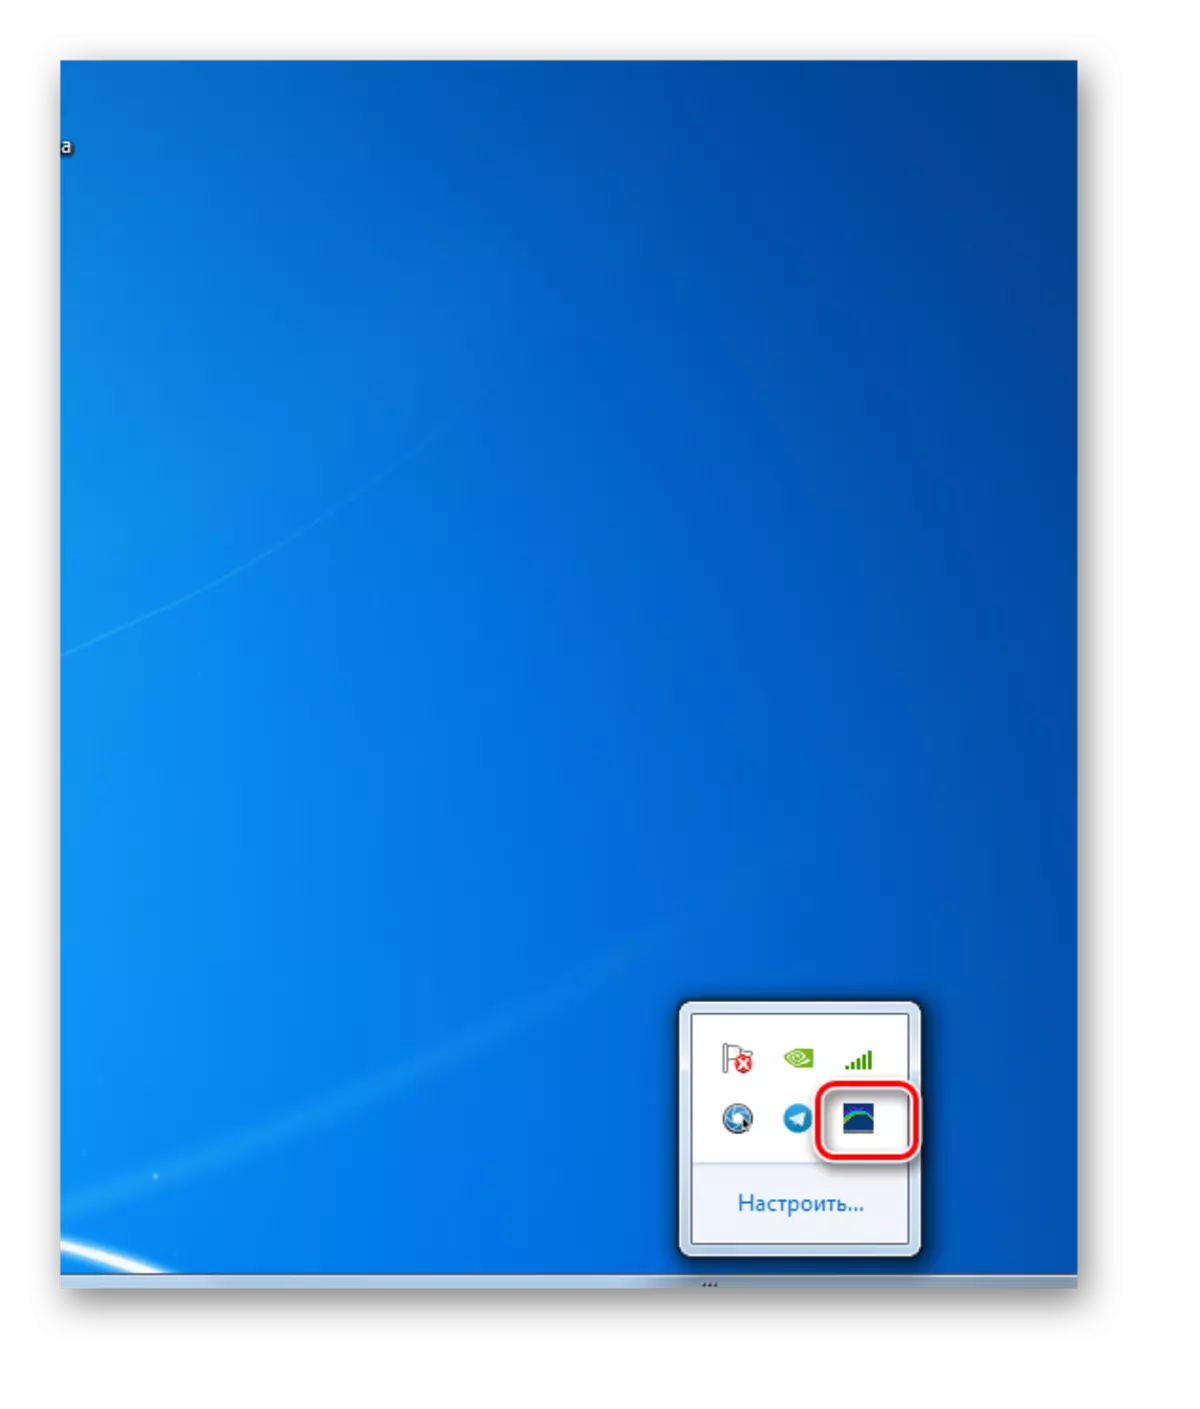 Taskbar Color Effects Ծրագրի պատկերակը համակարգի սկուտեղում Windows 7-ում